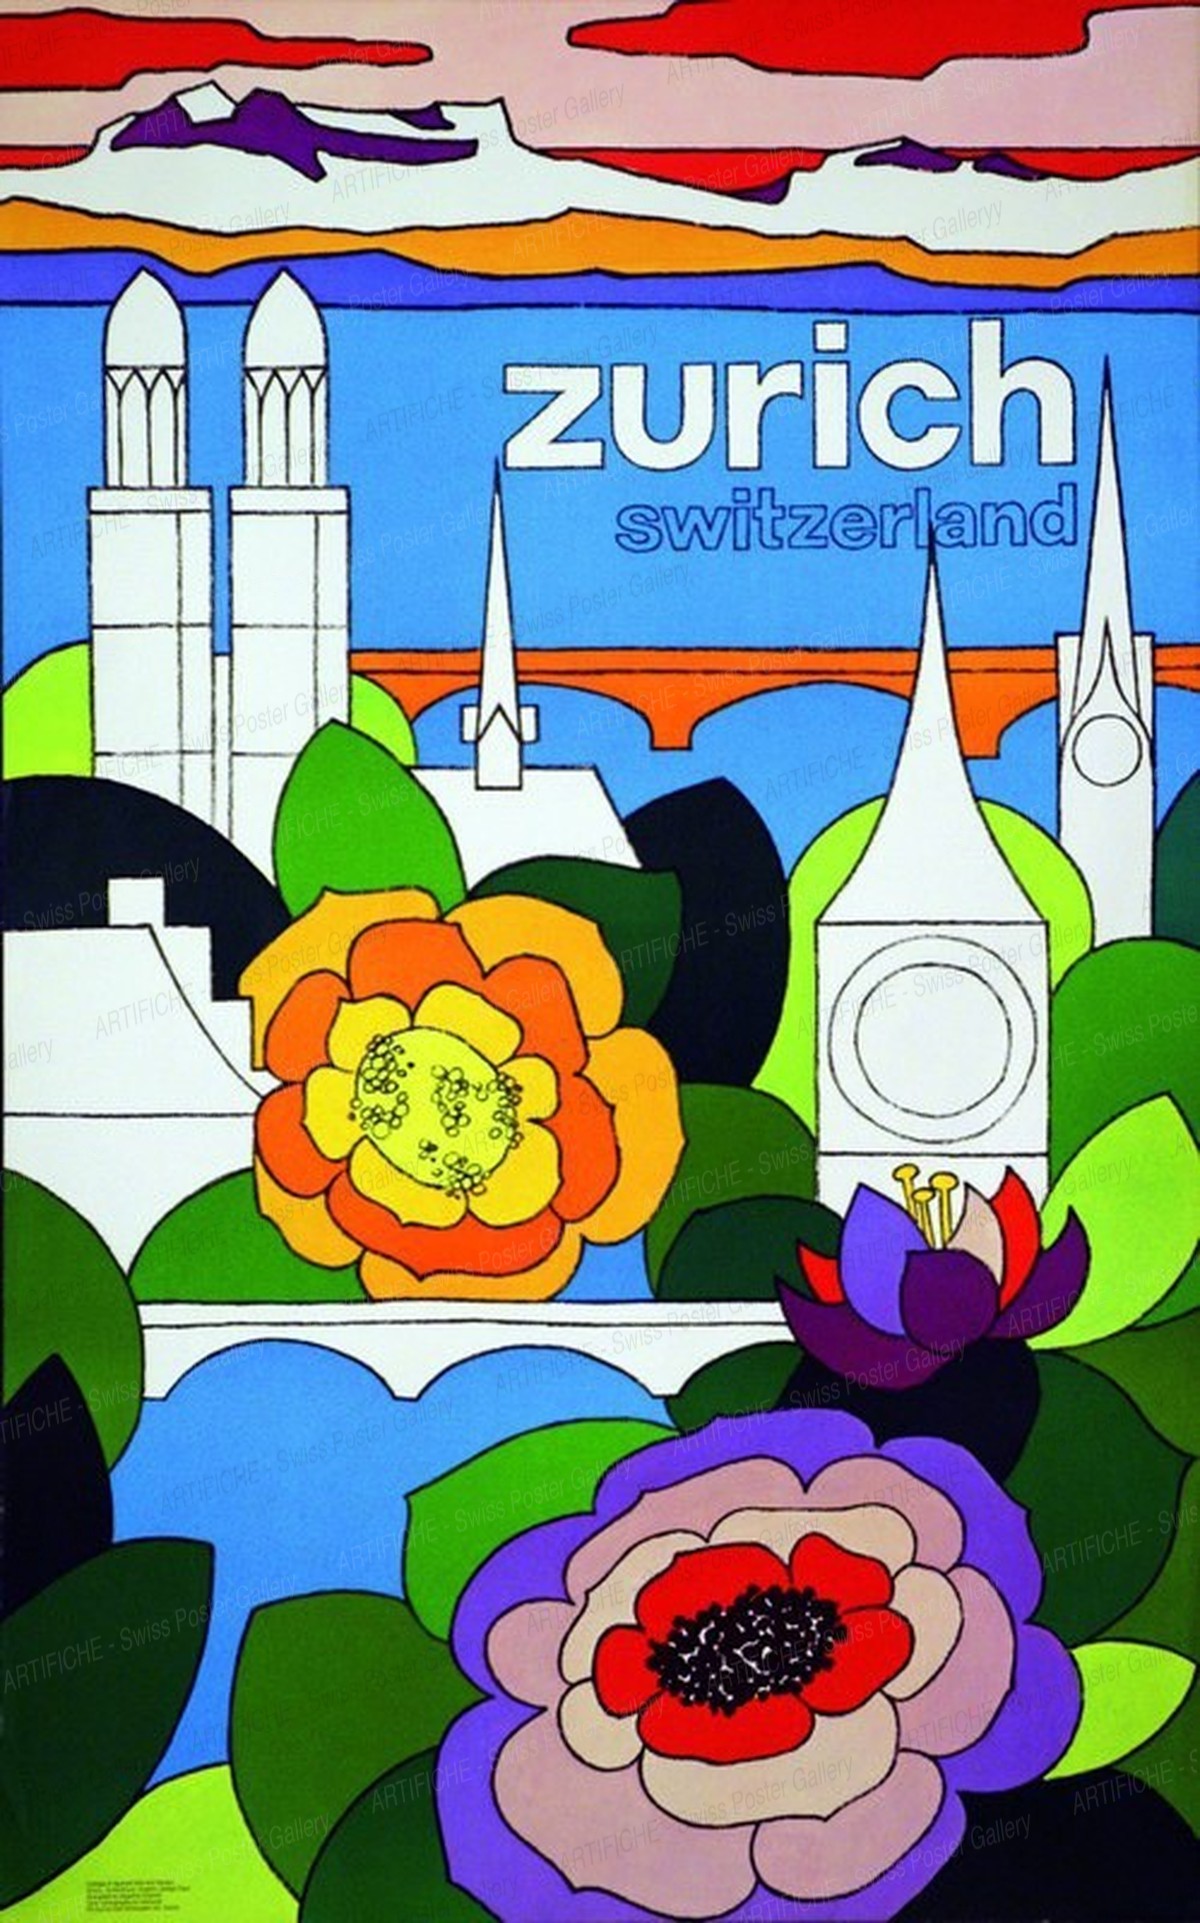 Zurich Switzerland, Angelica Grazioli